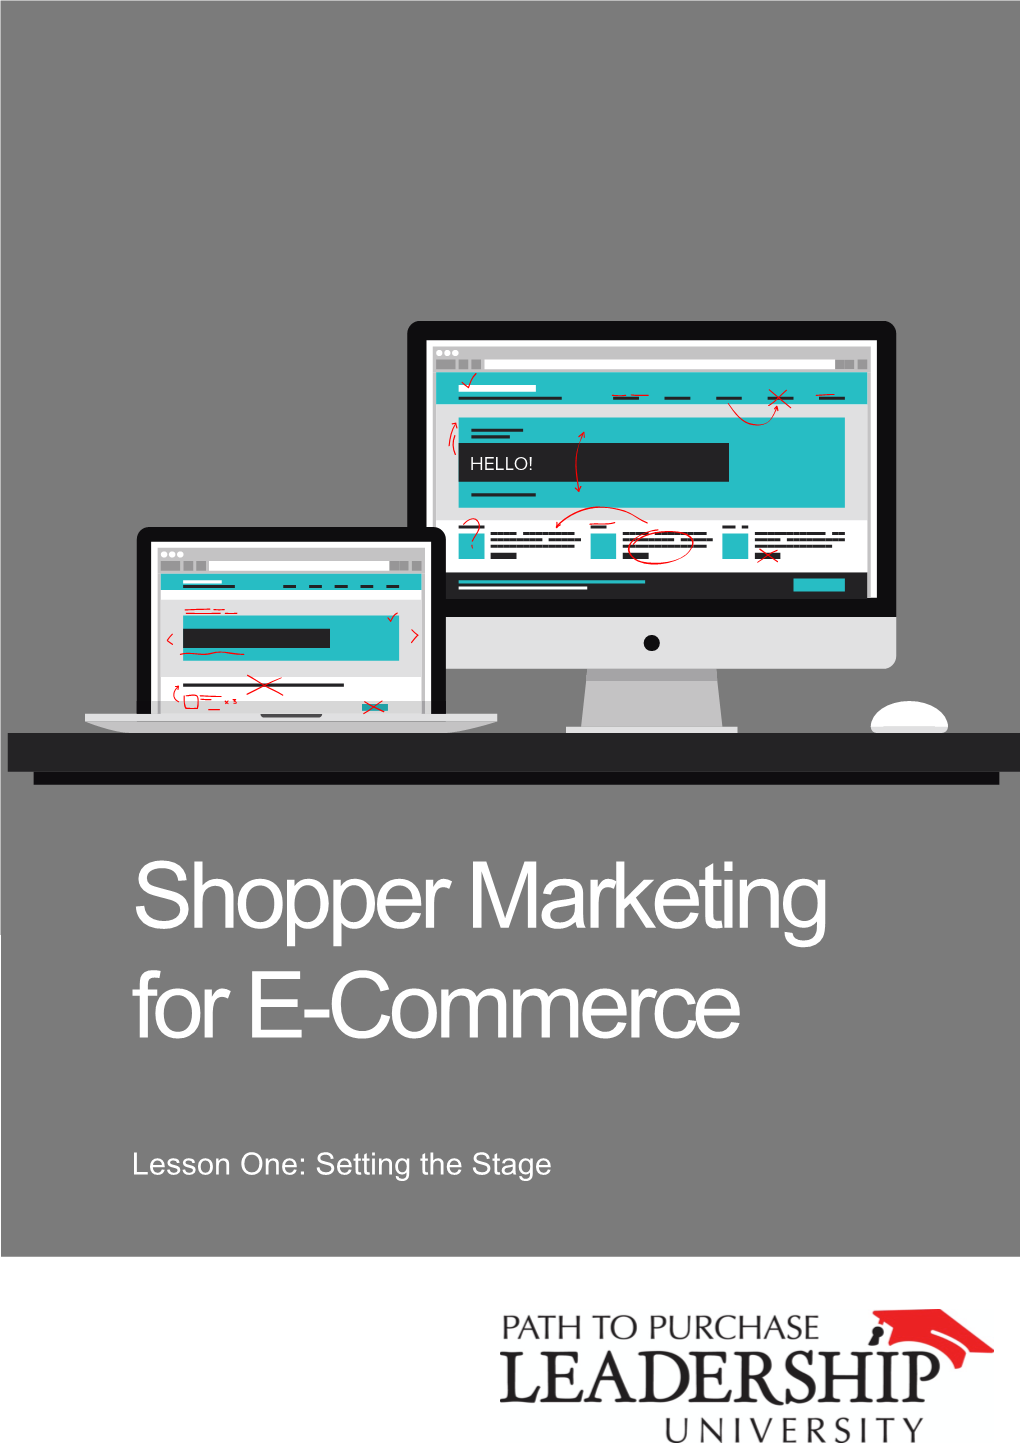 Shopper Marketing for E-Commerce